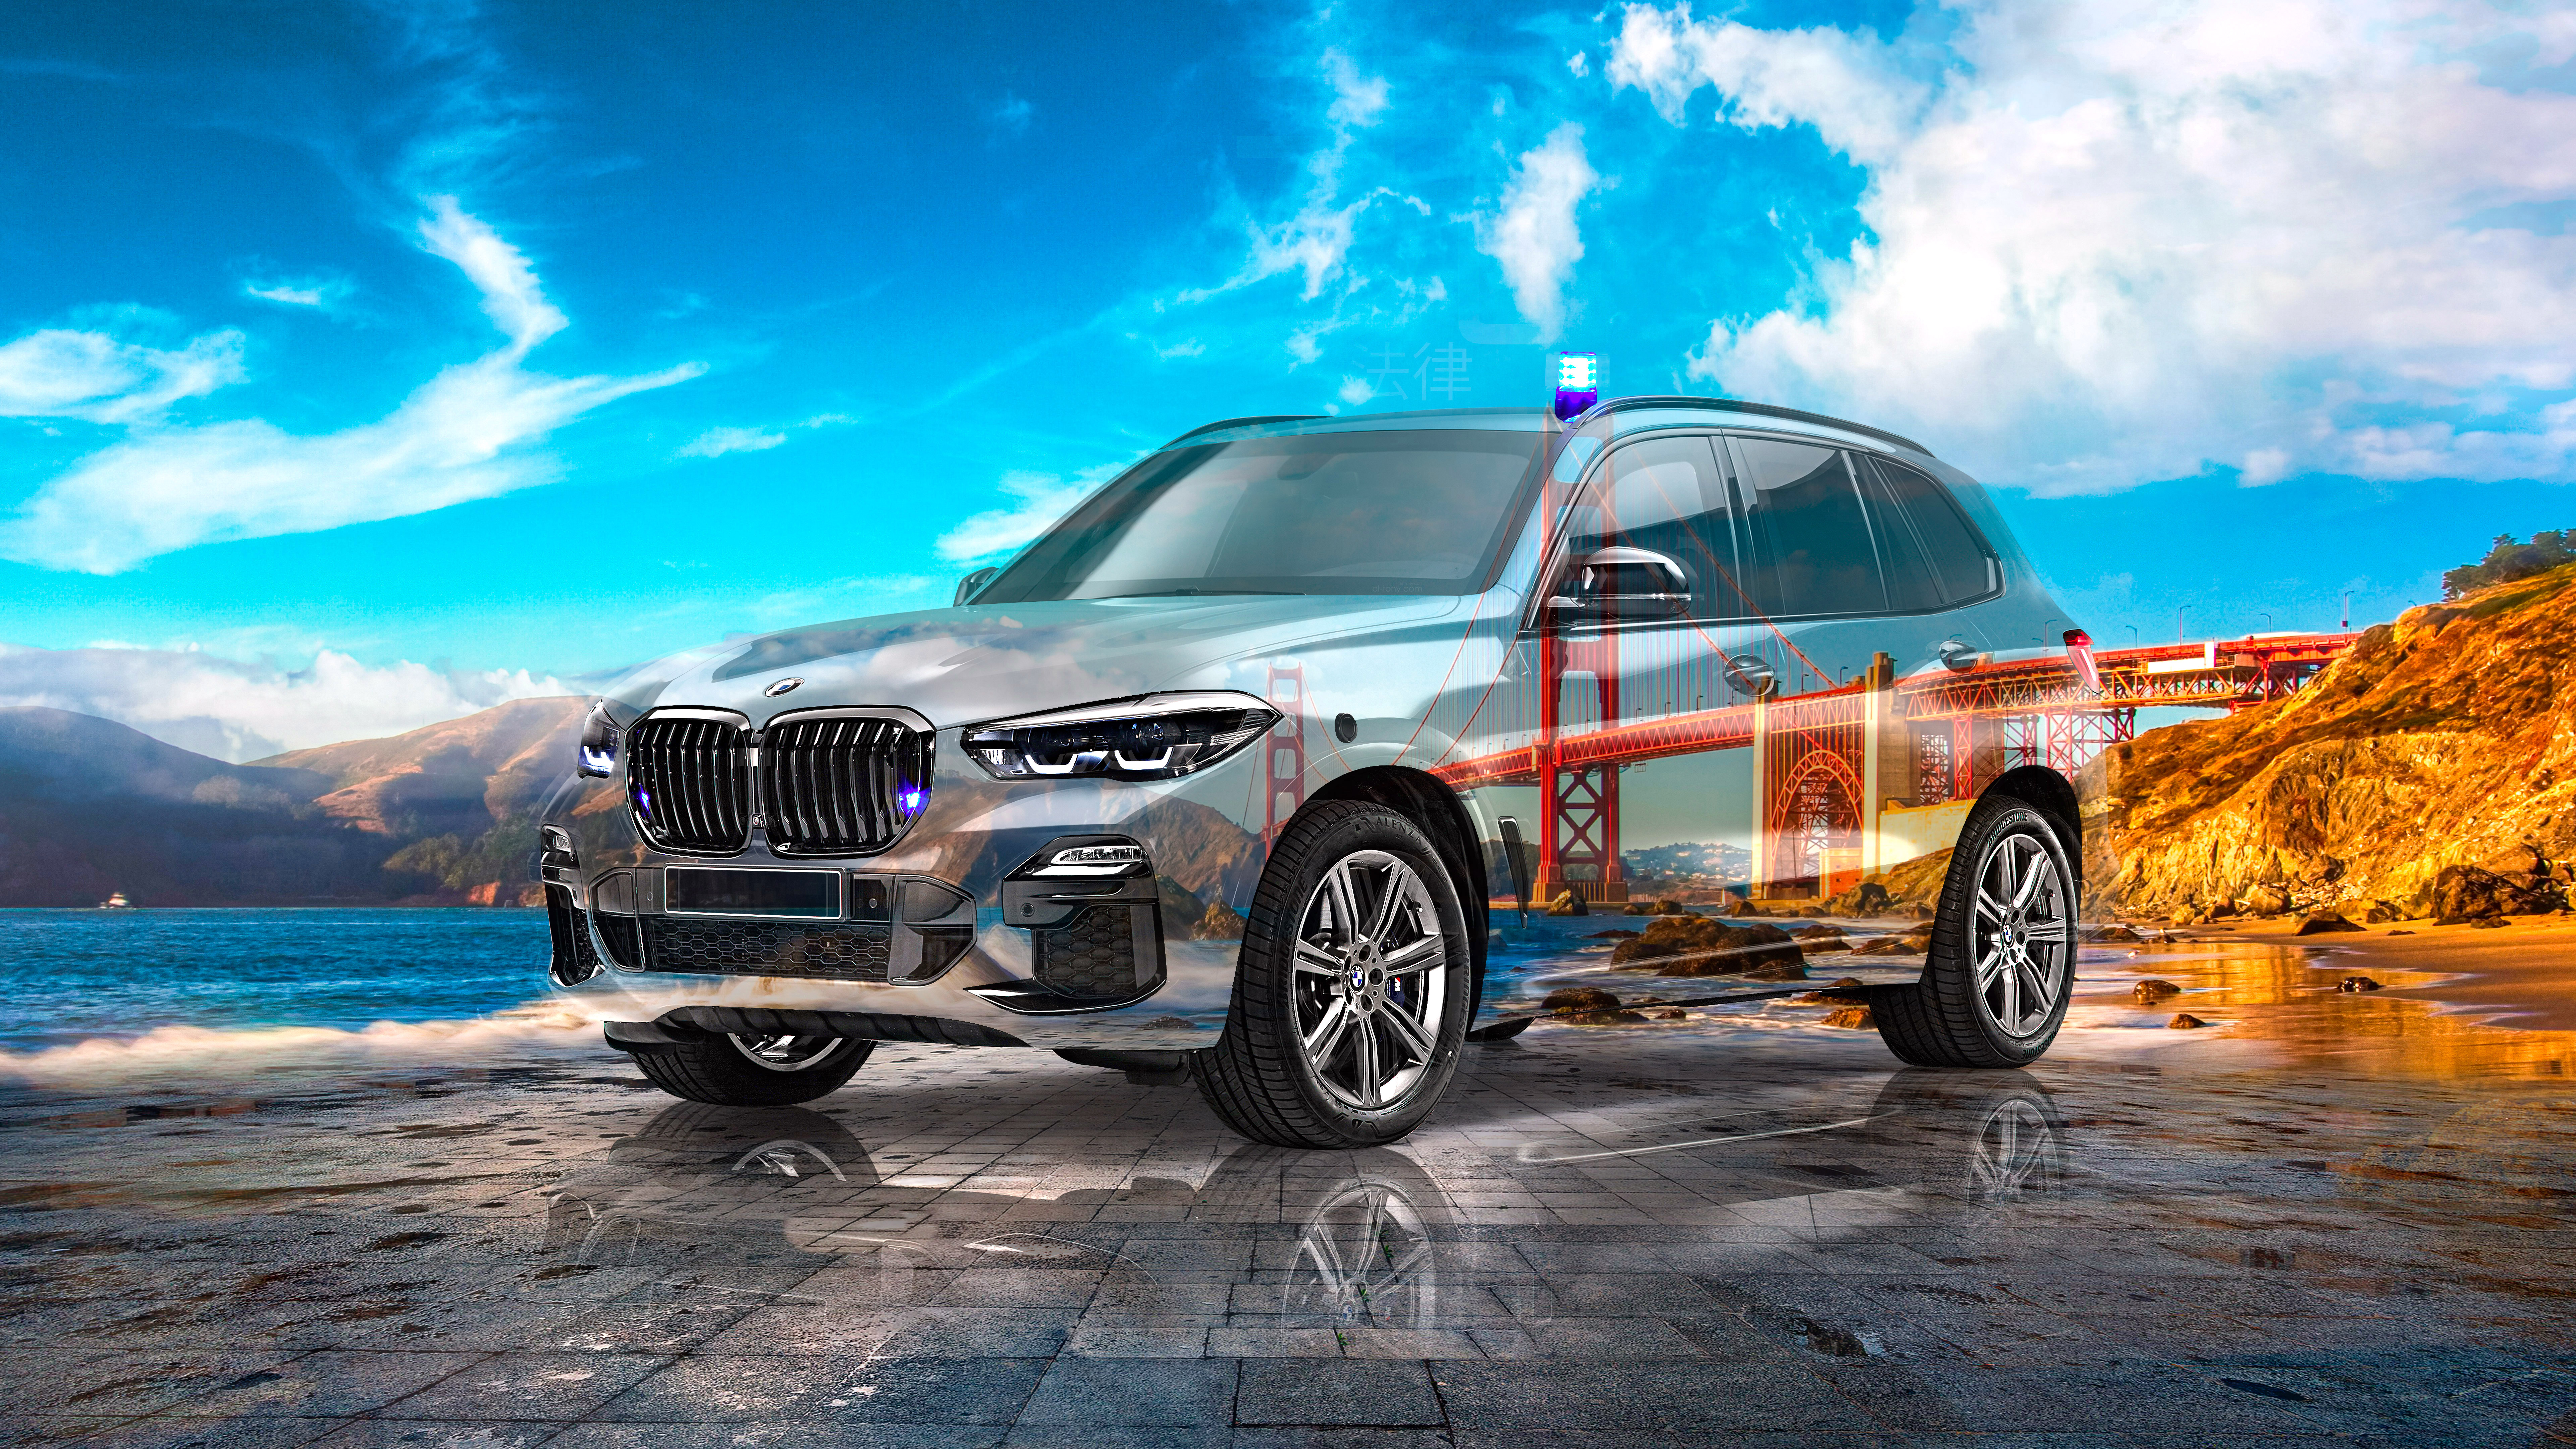 BMW-X5-Protection-VR6-Super-Crystal-Law-Soul-Sky-Golden-Gate-Bridge-San-Francisco-USA-Tactile-Hologram-Art-Car